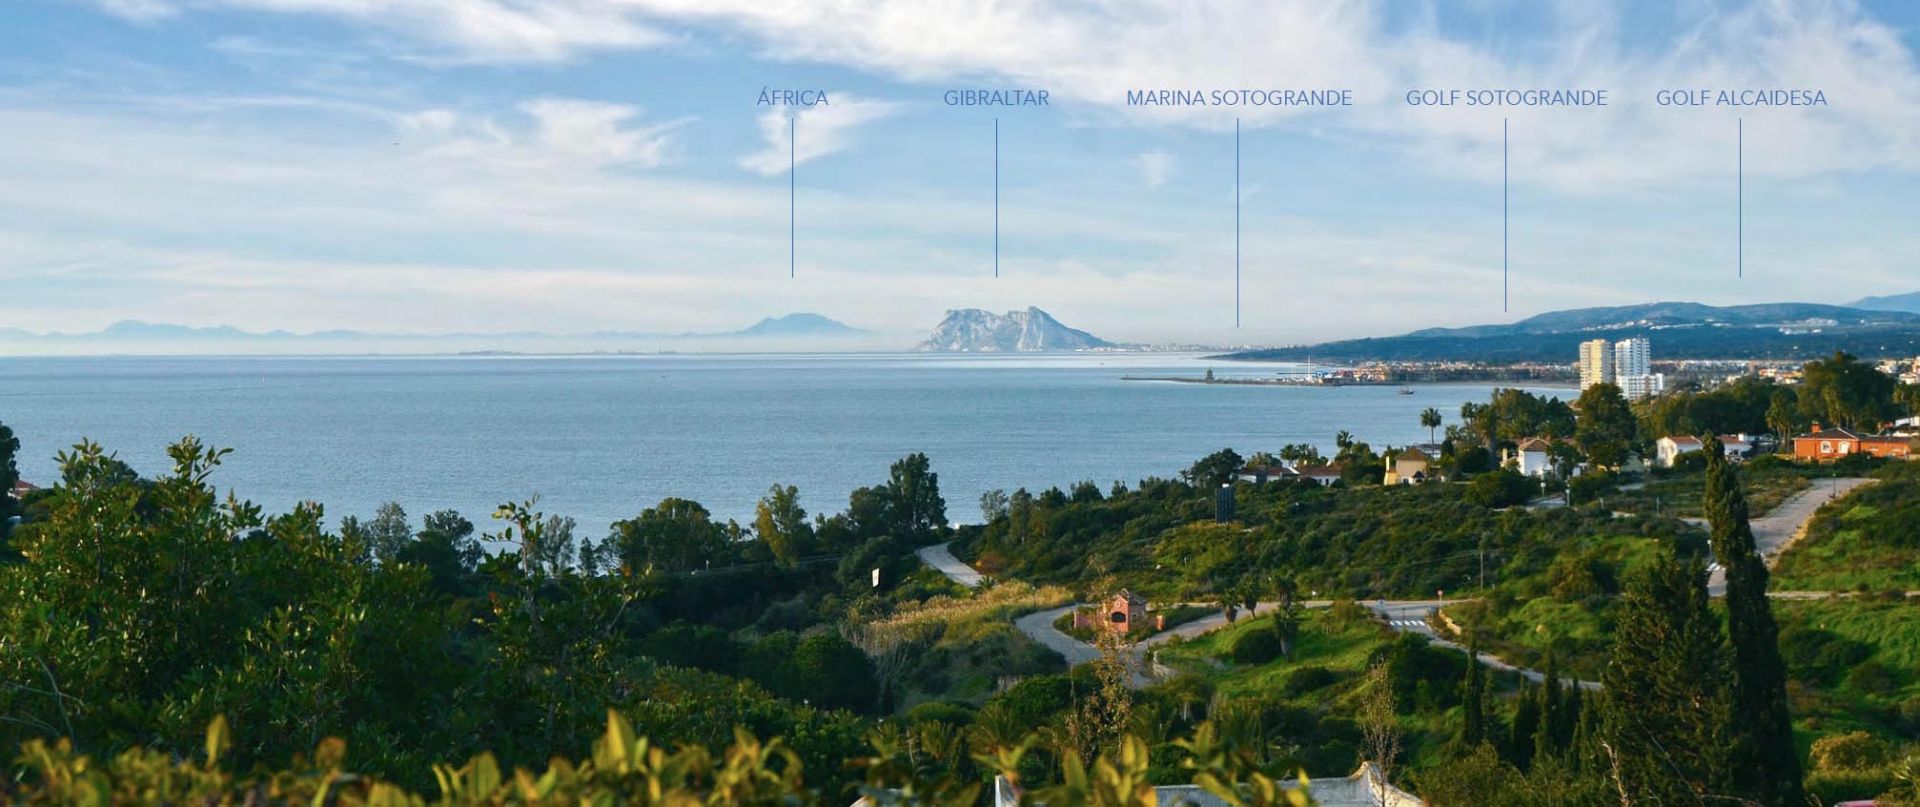 Views to Morocco, Gibraltar, Marina Sotogrande and the Mediterranean sea.